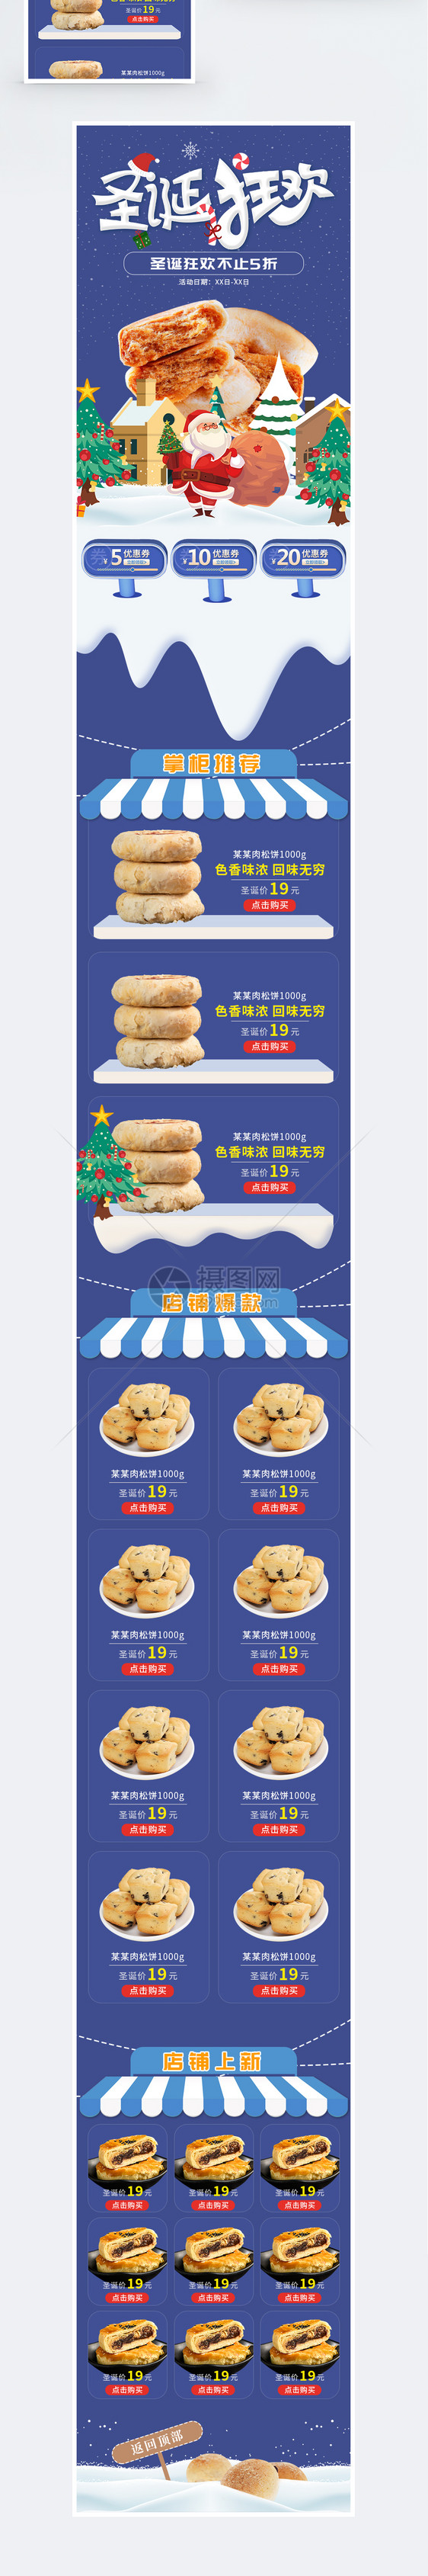 圣诞节食品促销淘宝手机端模板图片